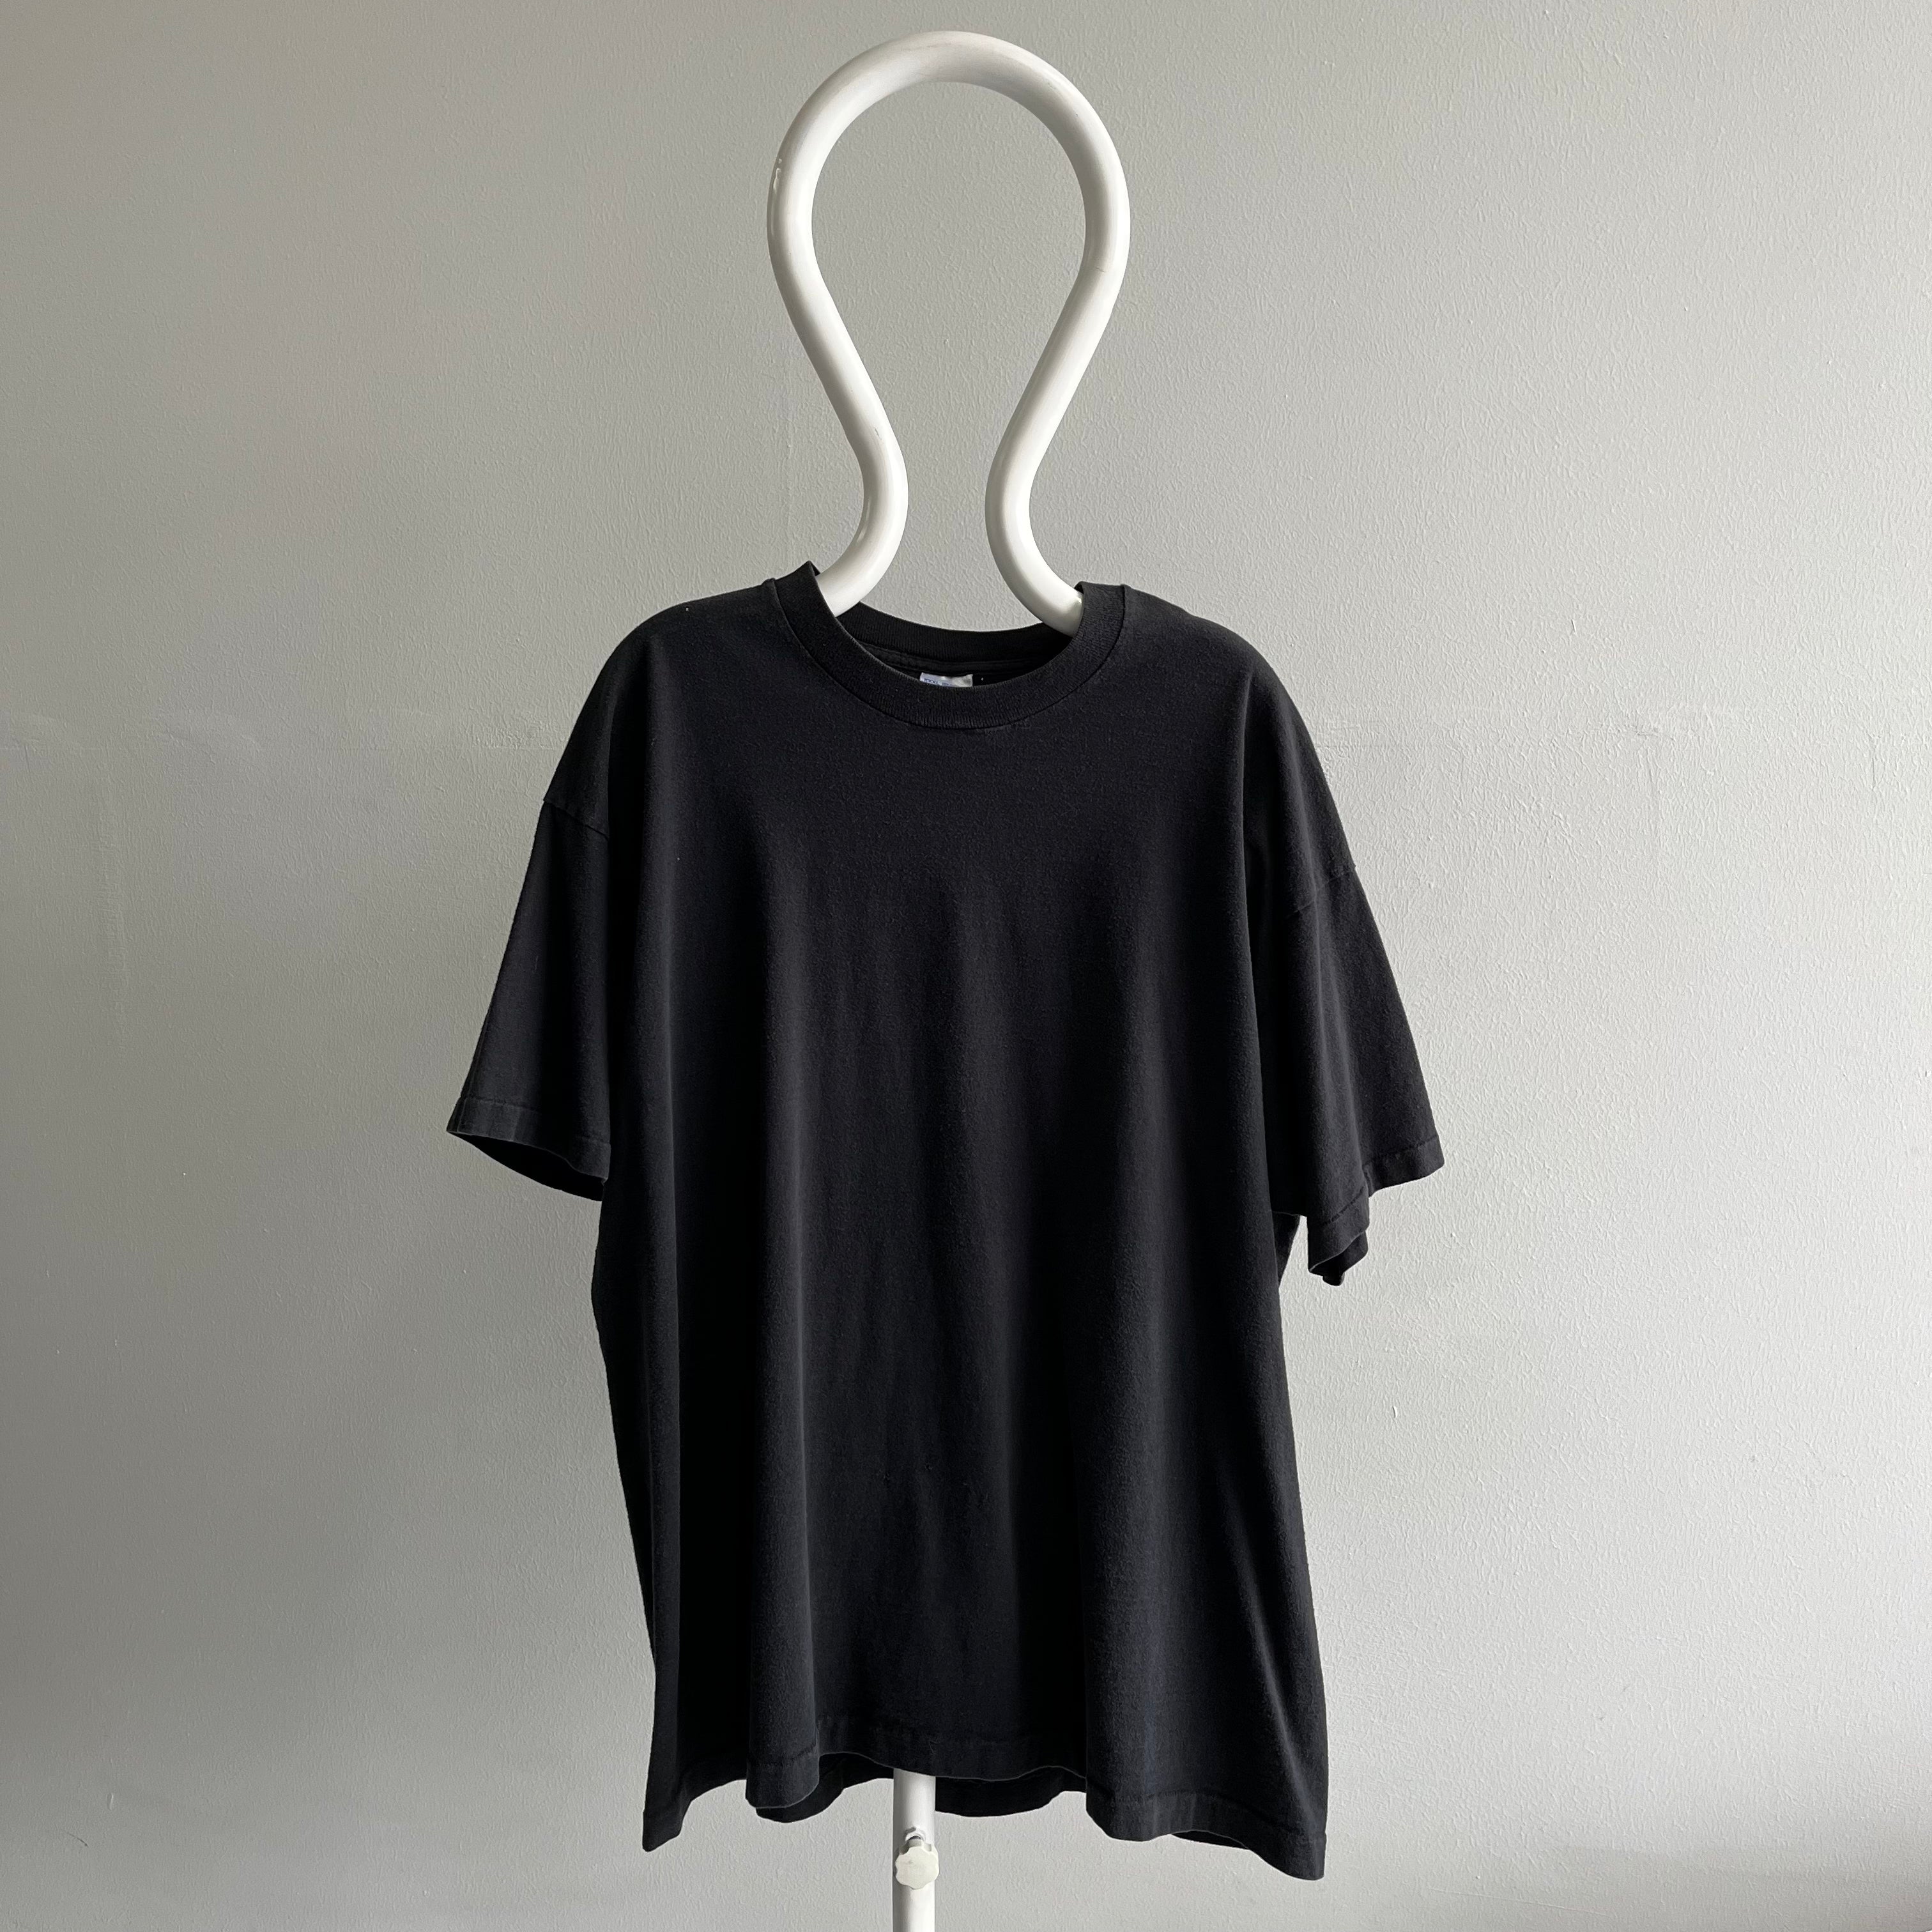 1990s XXXL Blank Black T-Shirt by BVD